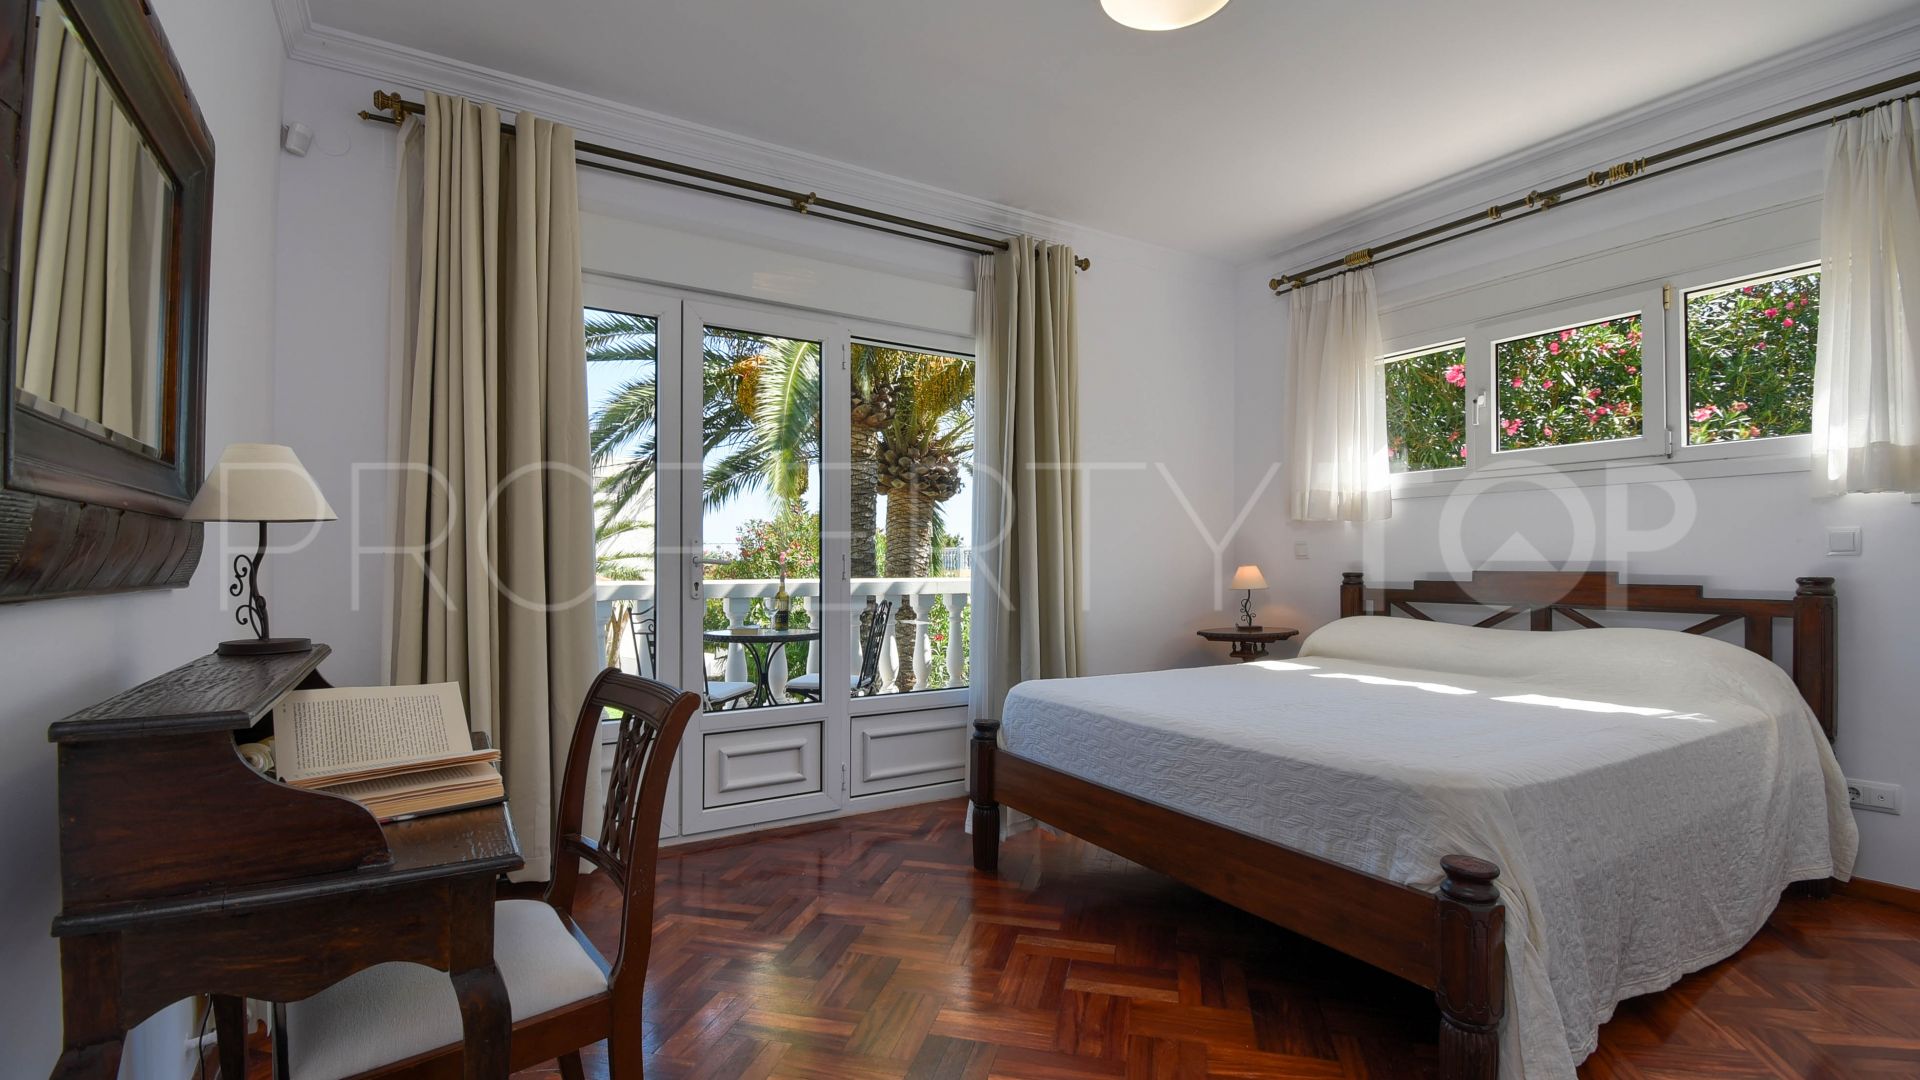 Montgo 5 bedrooms villa for sale